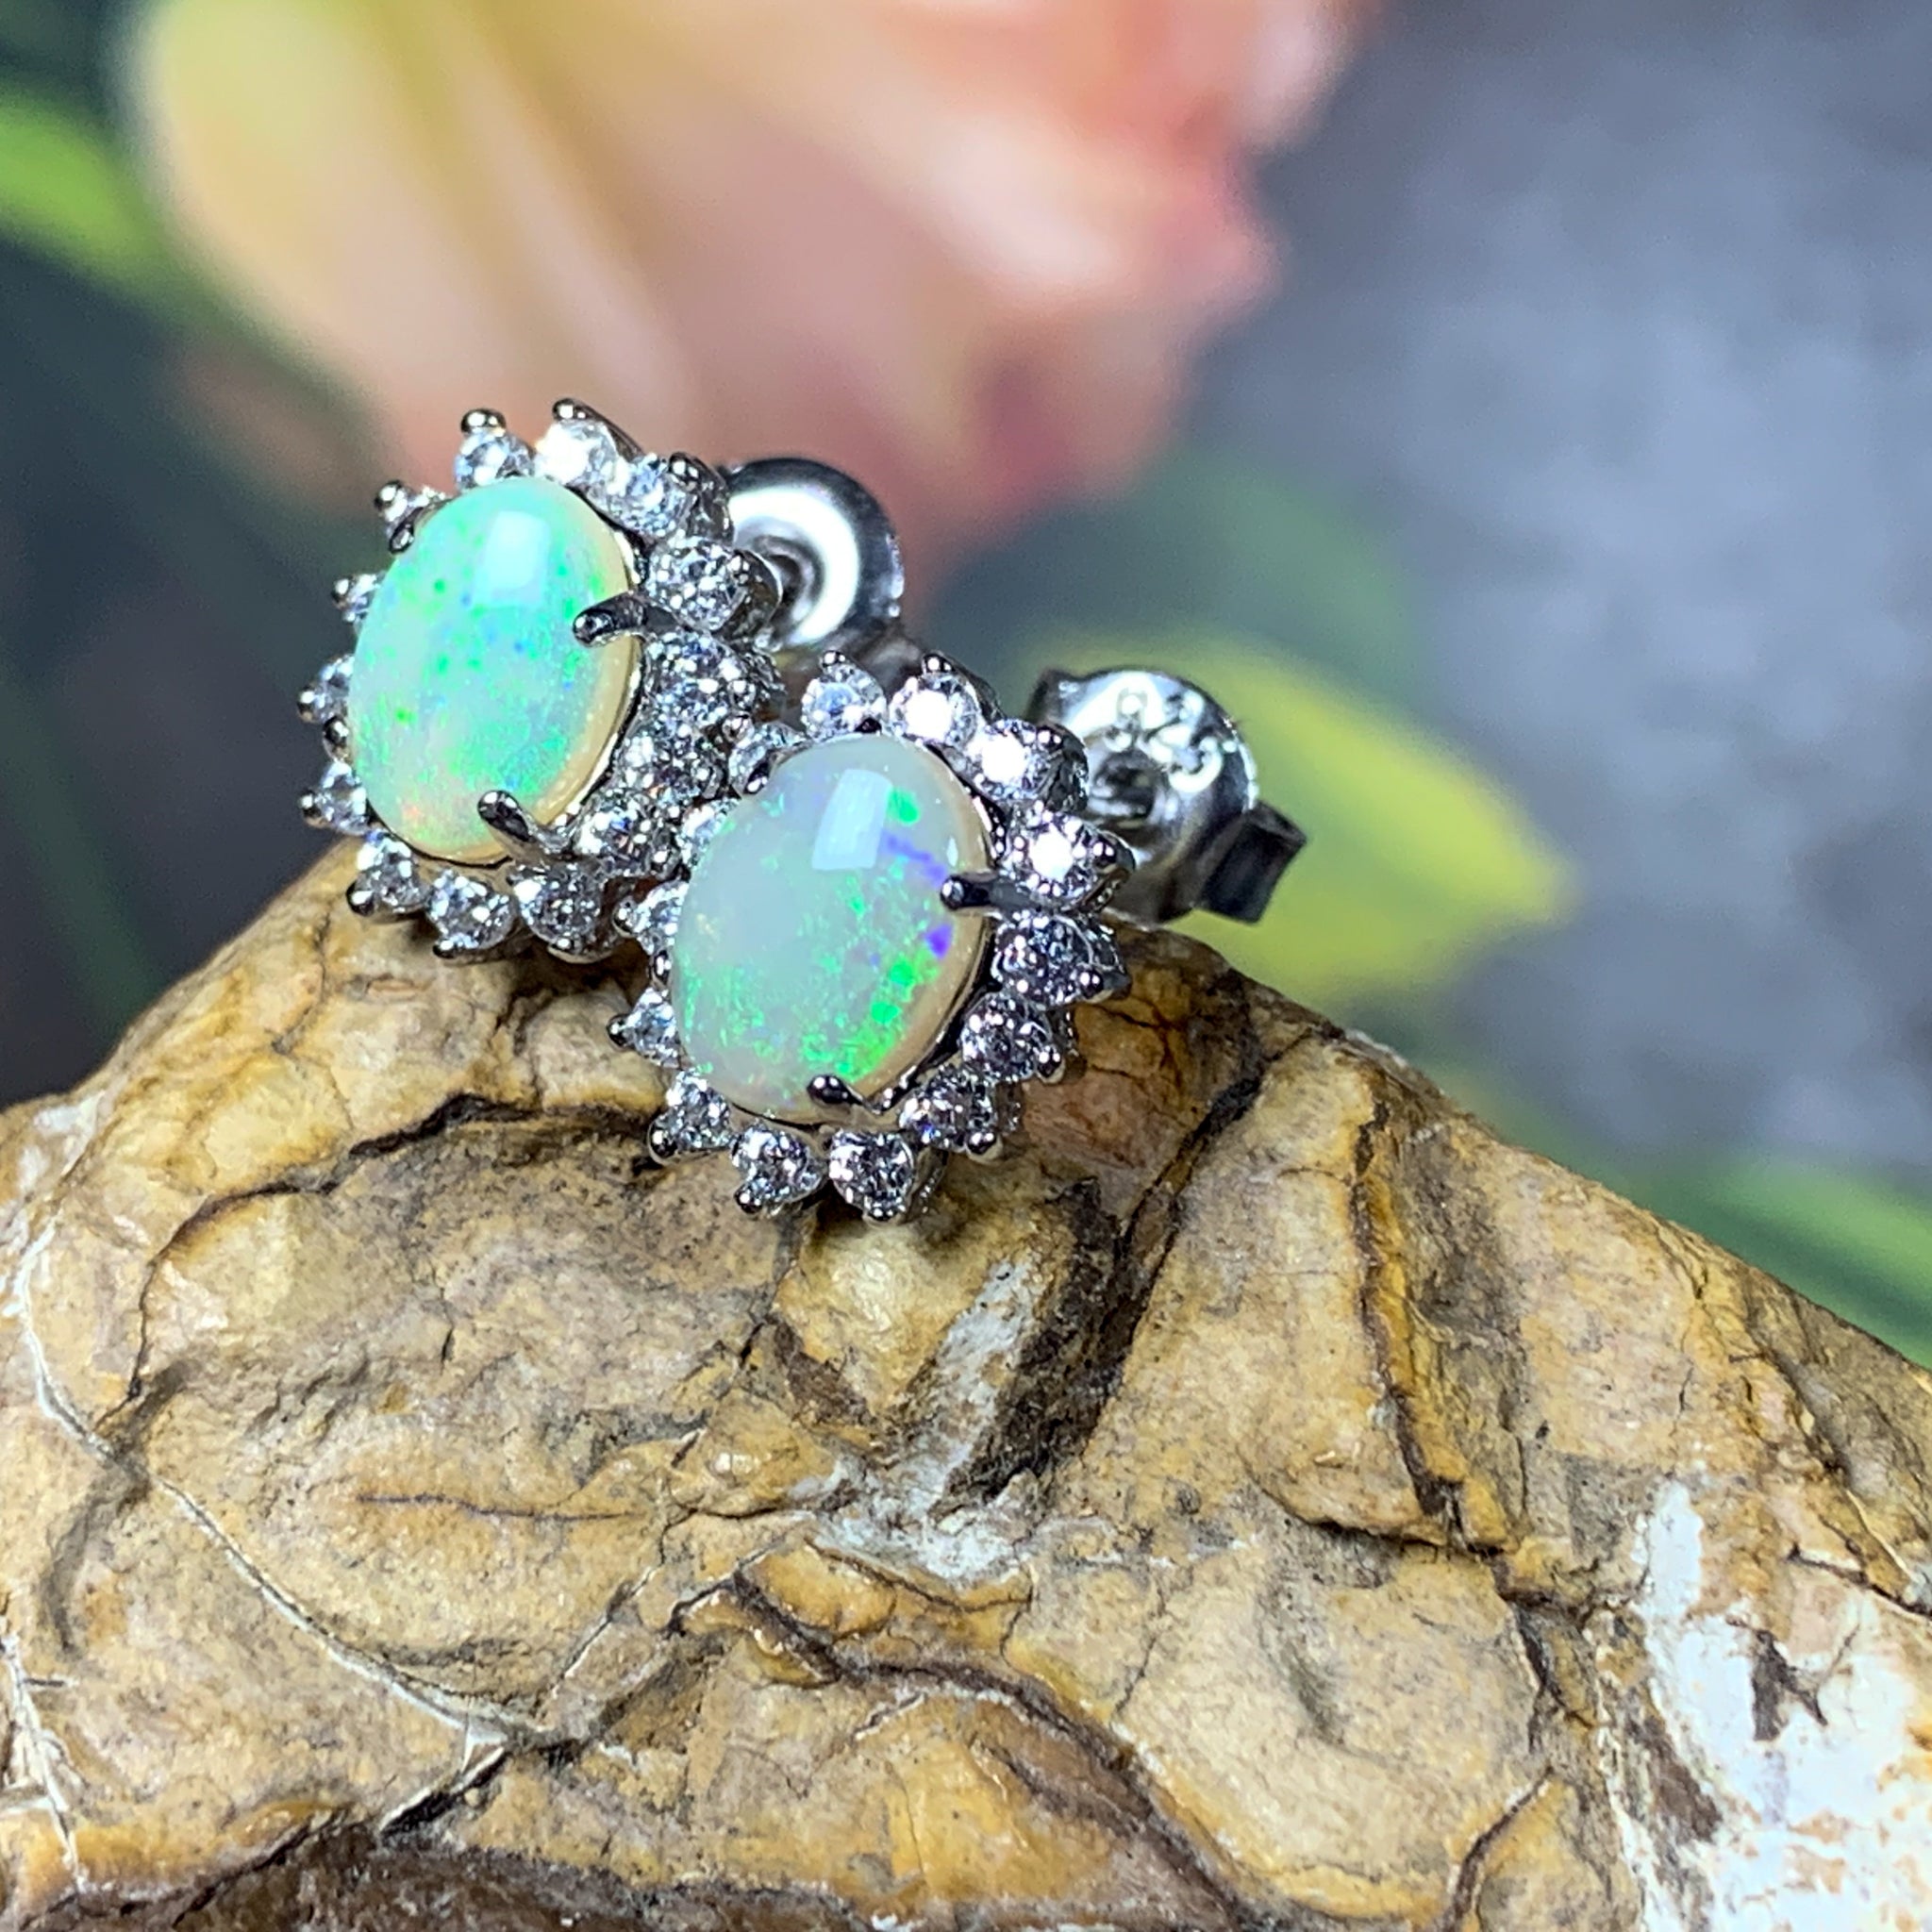 Sterling Silver 7x5mm White Opal cluster earrings - Masterpiece Jewellery Opal & Gems Sydney Australia | Online Shop